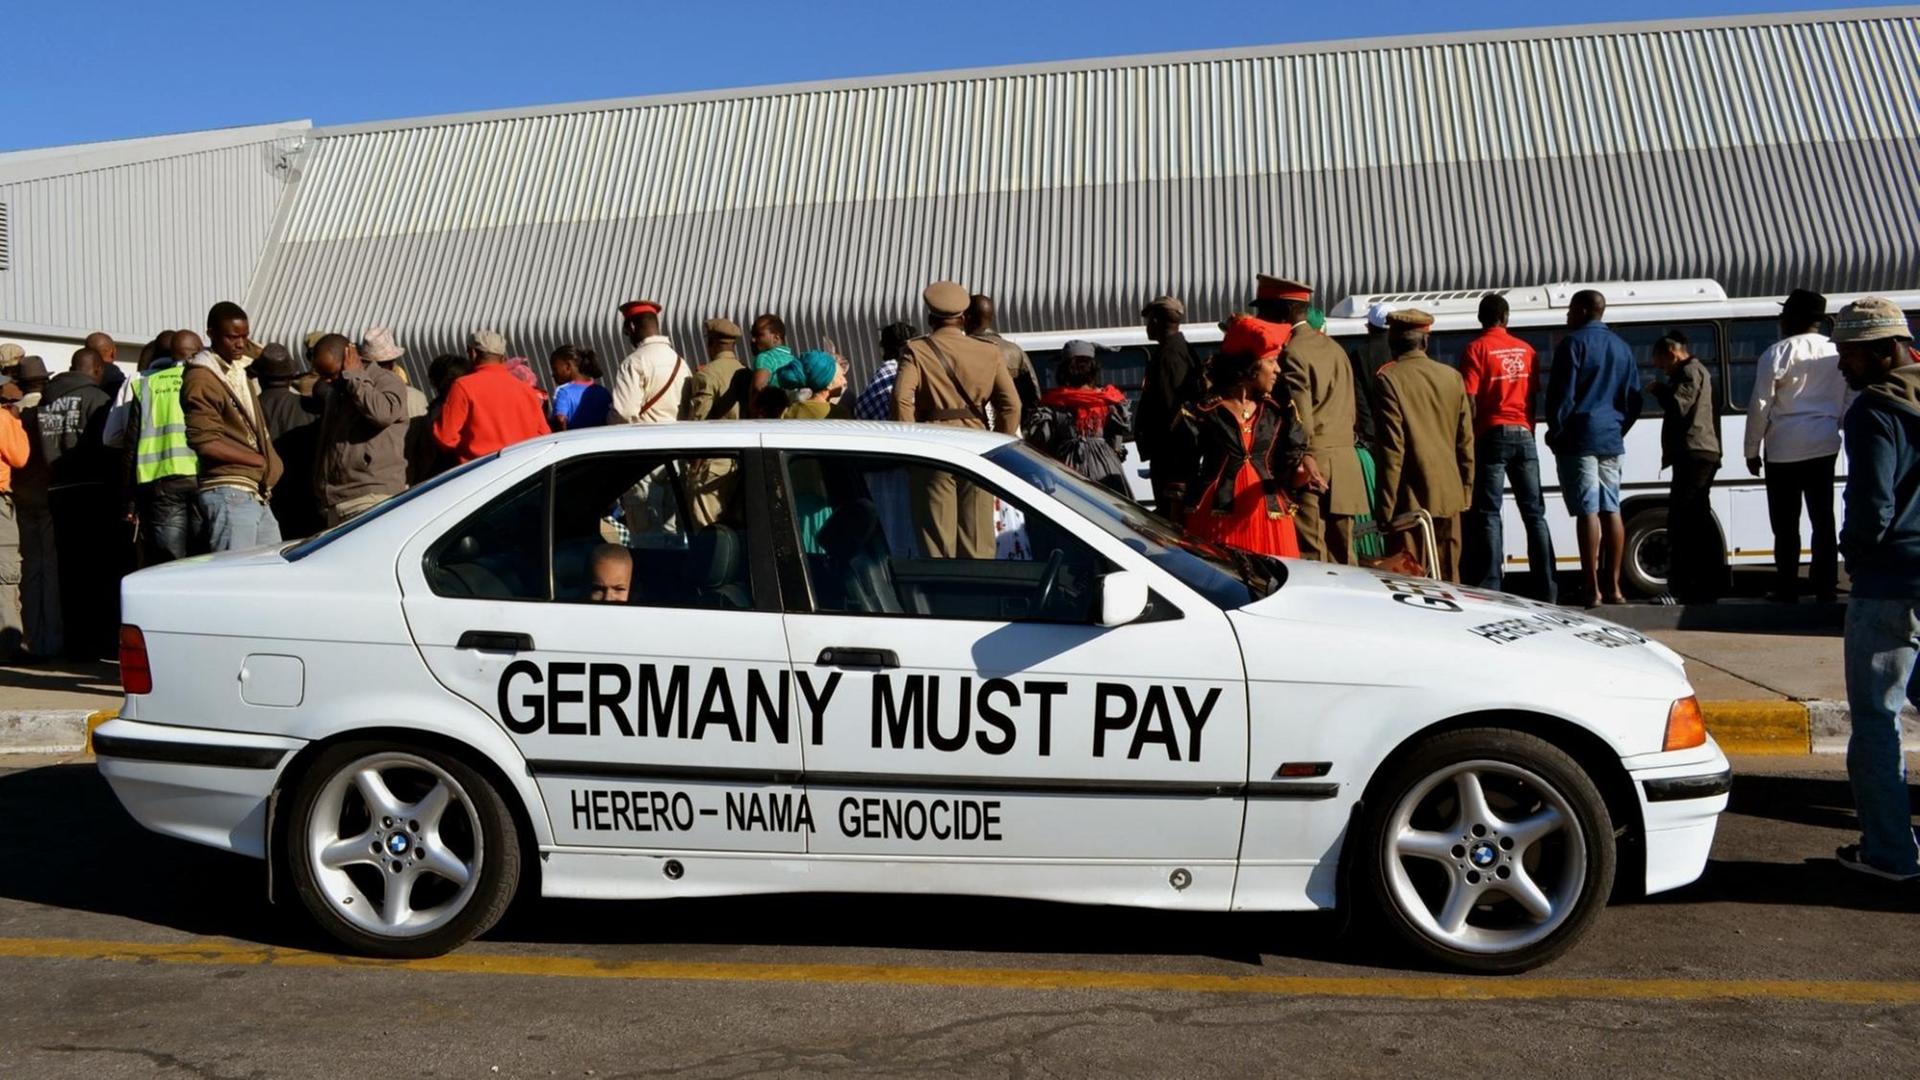 "Deutschland muss bezahlen": Forderung auf einem Auto in Windhuk, Namibia.